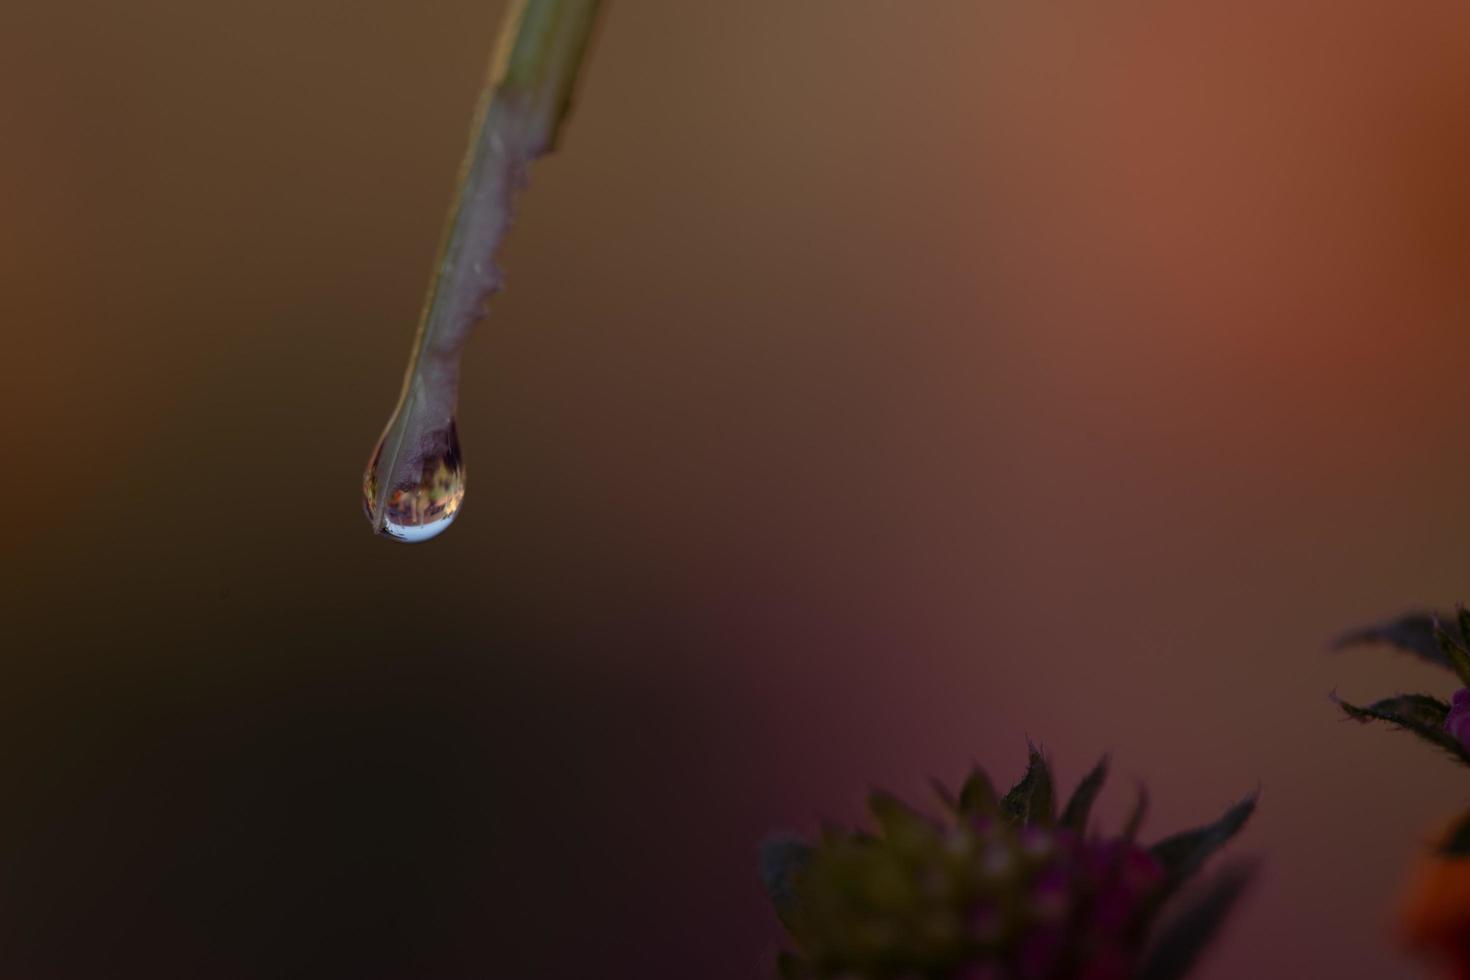 Raindrop on a leaf photo